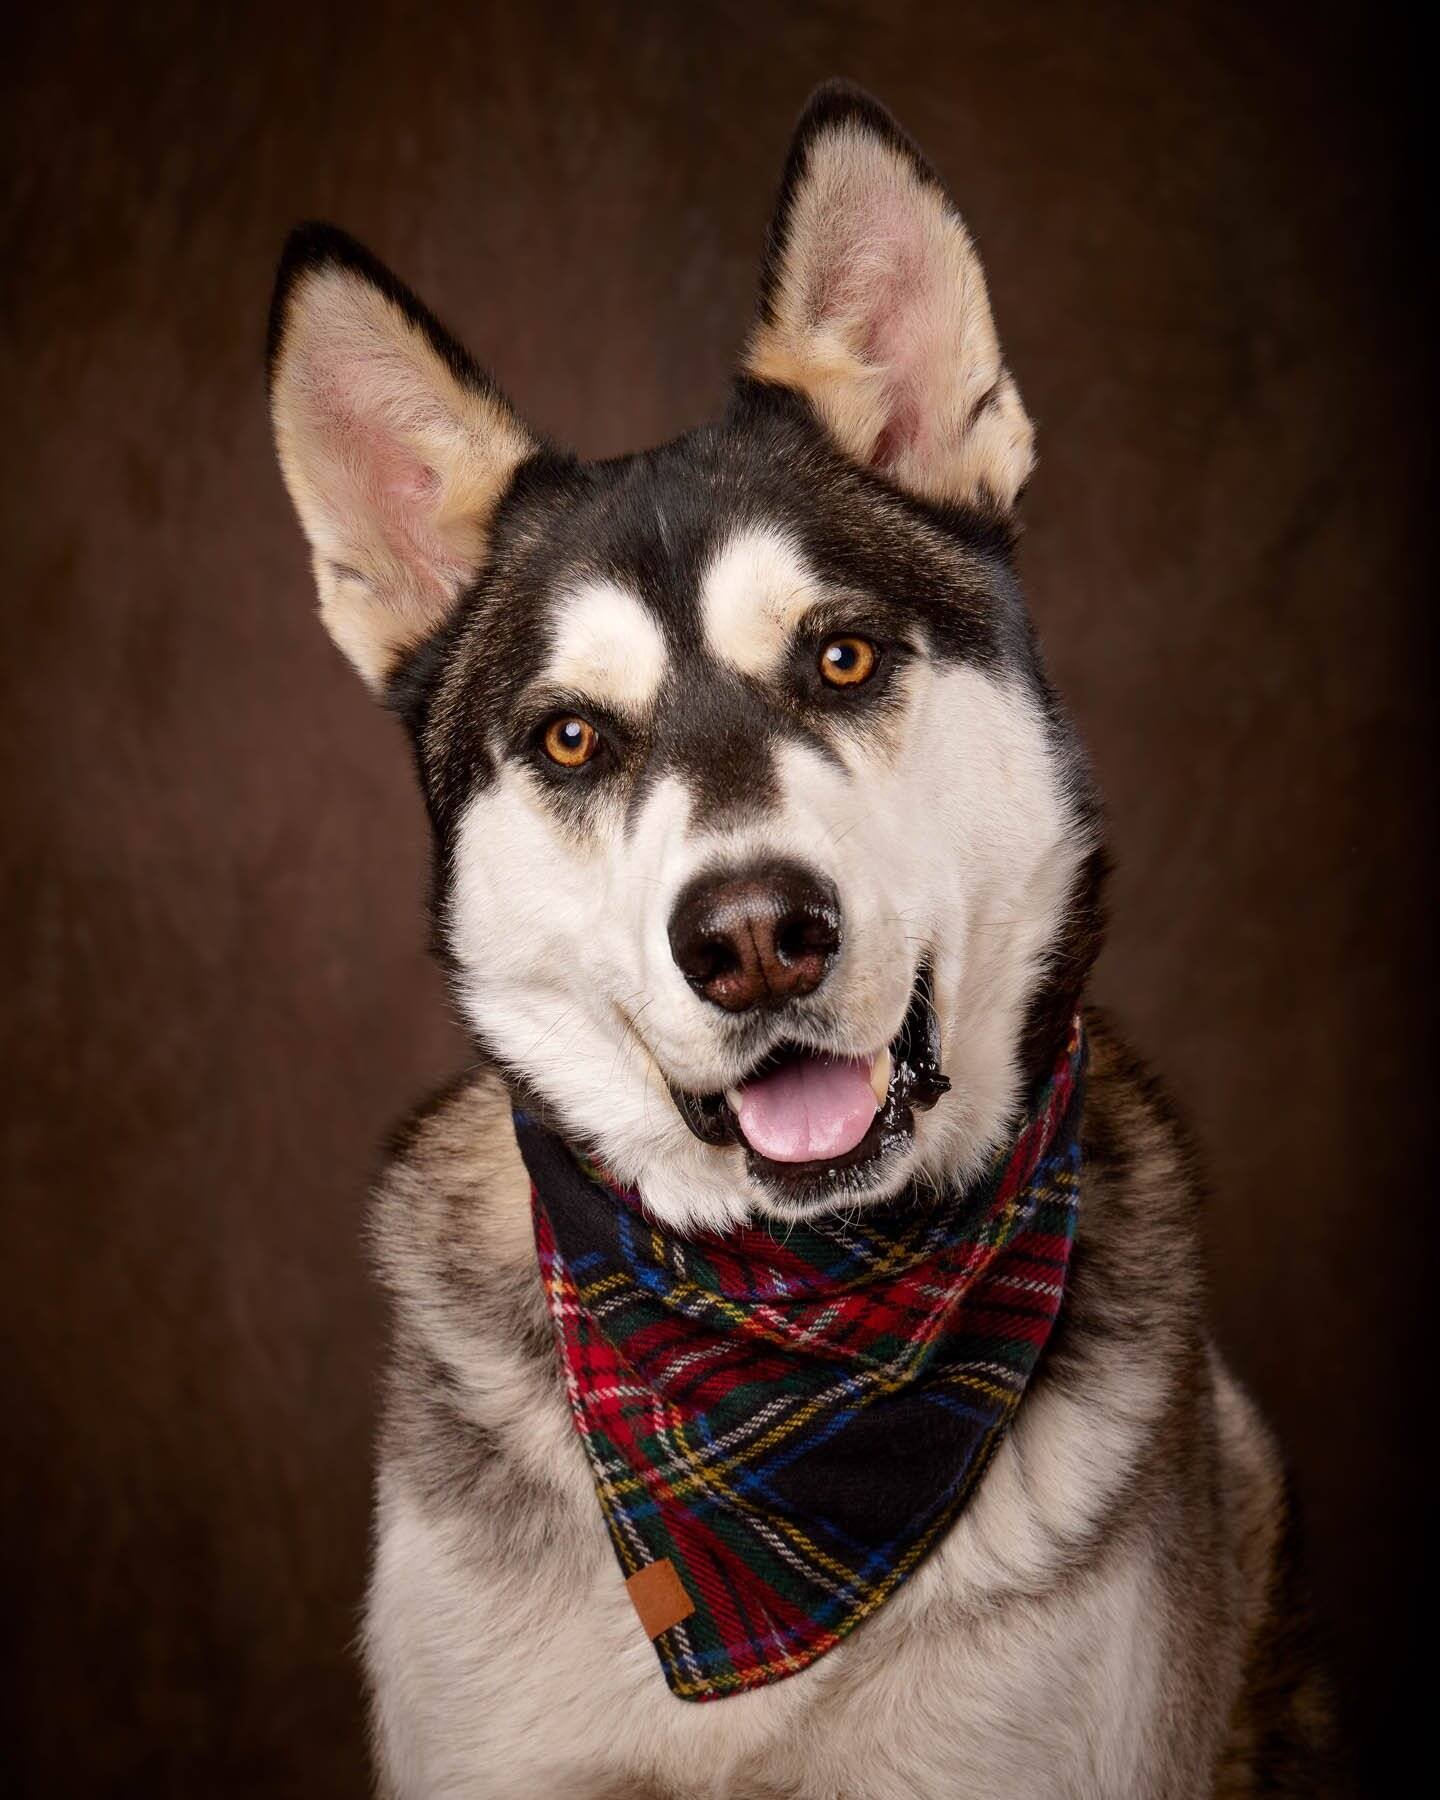  Studio photo of husky dog. Denver, Colorado. Pet, pets, family photography. 